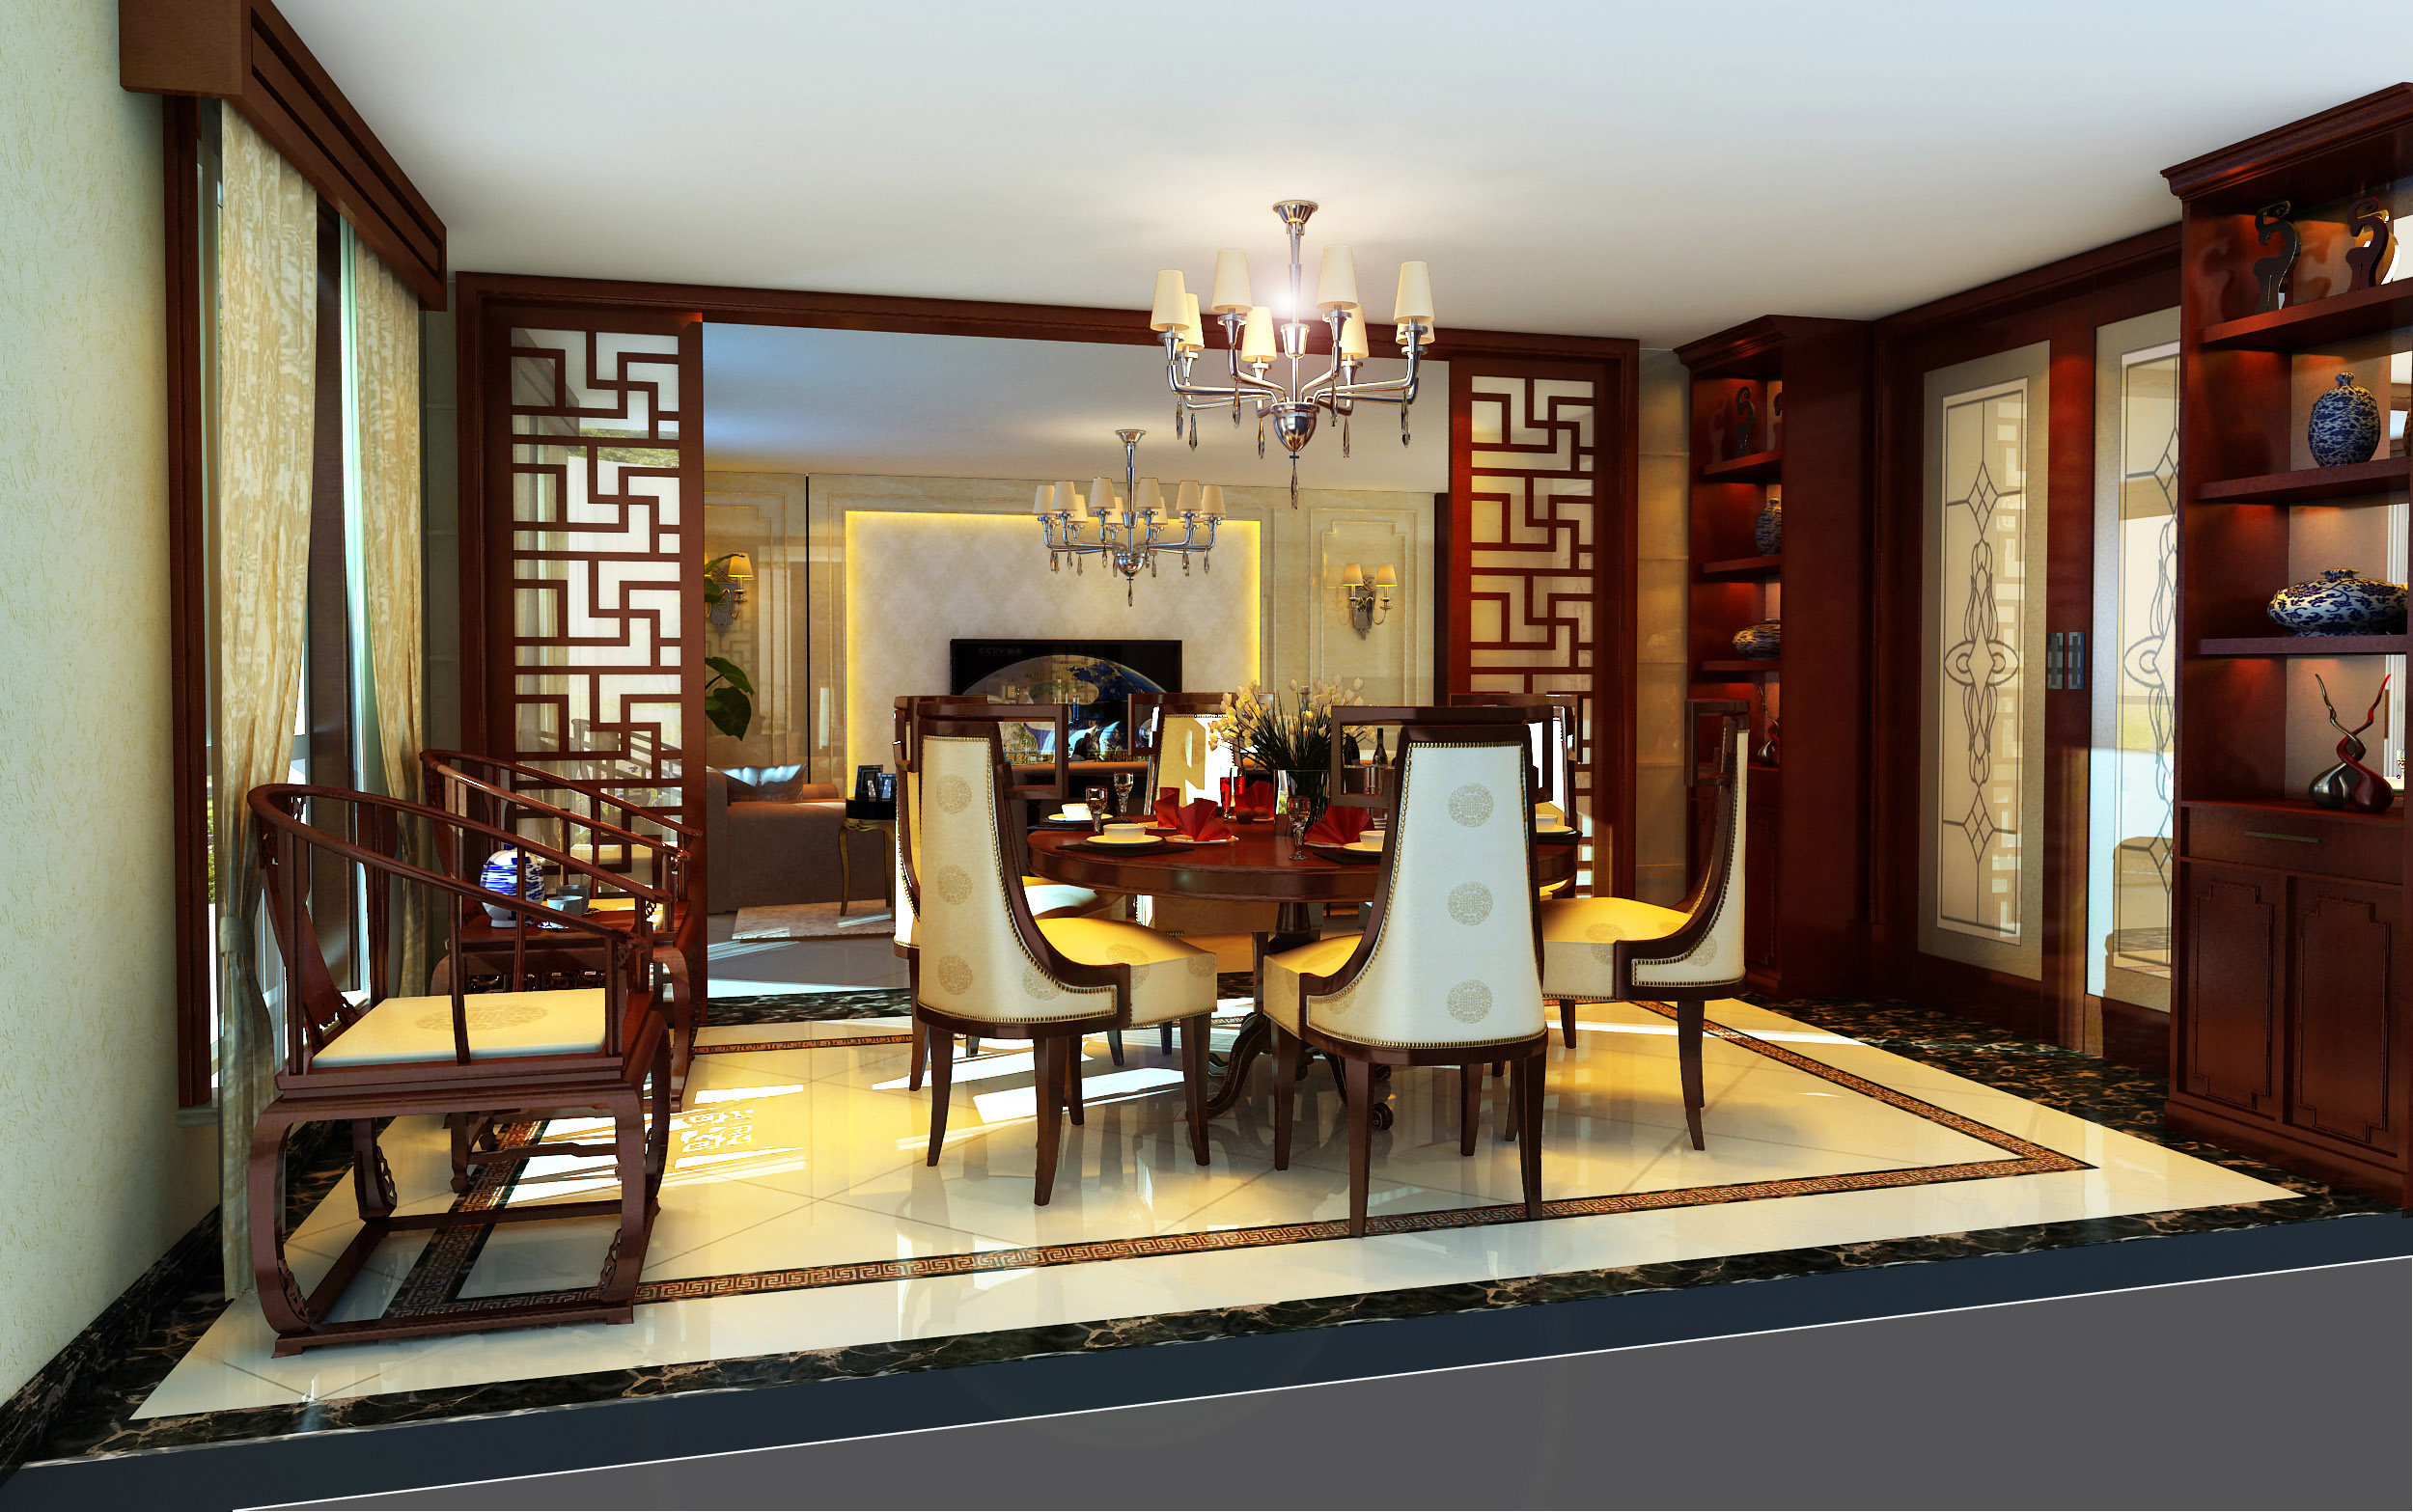 新中式 复式 餐厅图片来自北京今朝装饰刘在东晶国际公寓新中式装饰设计的分享